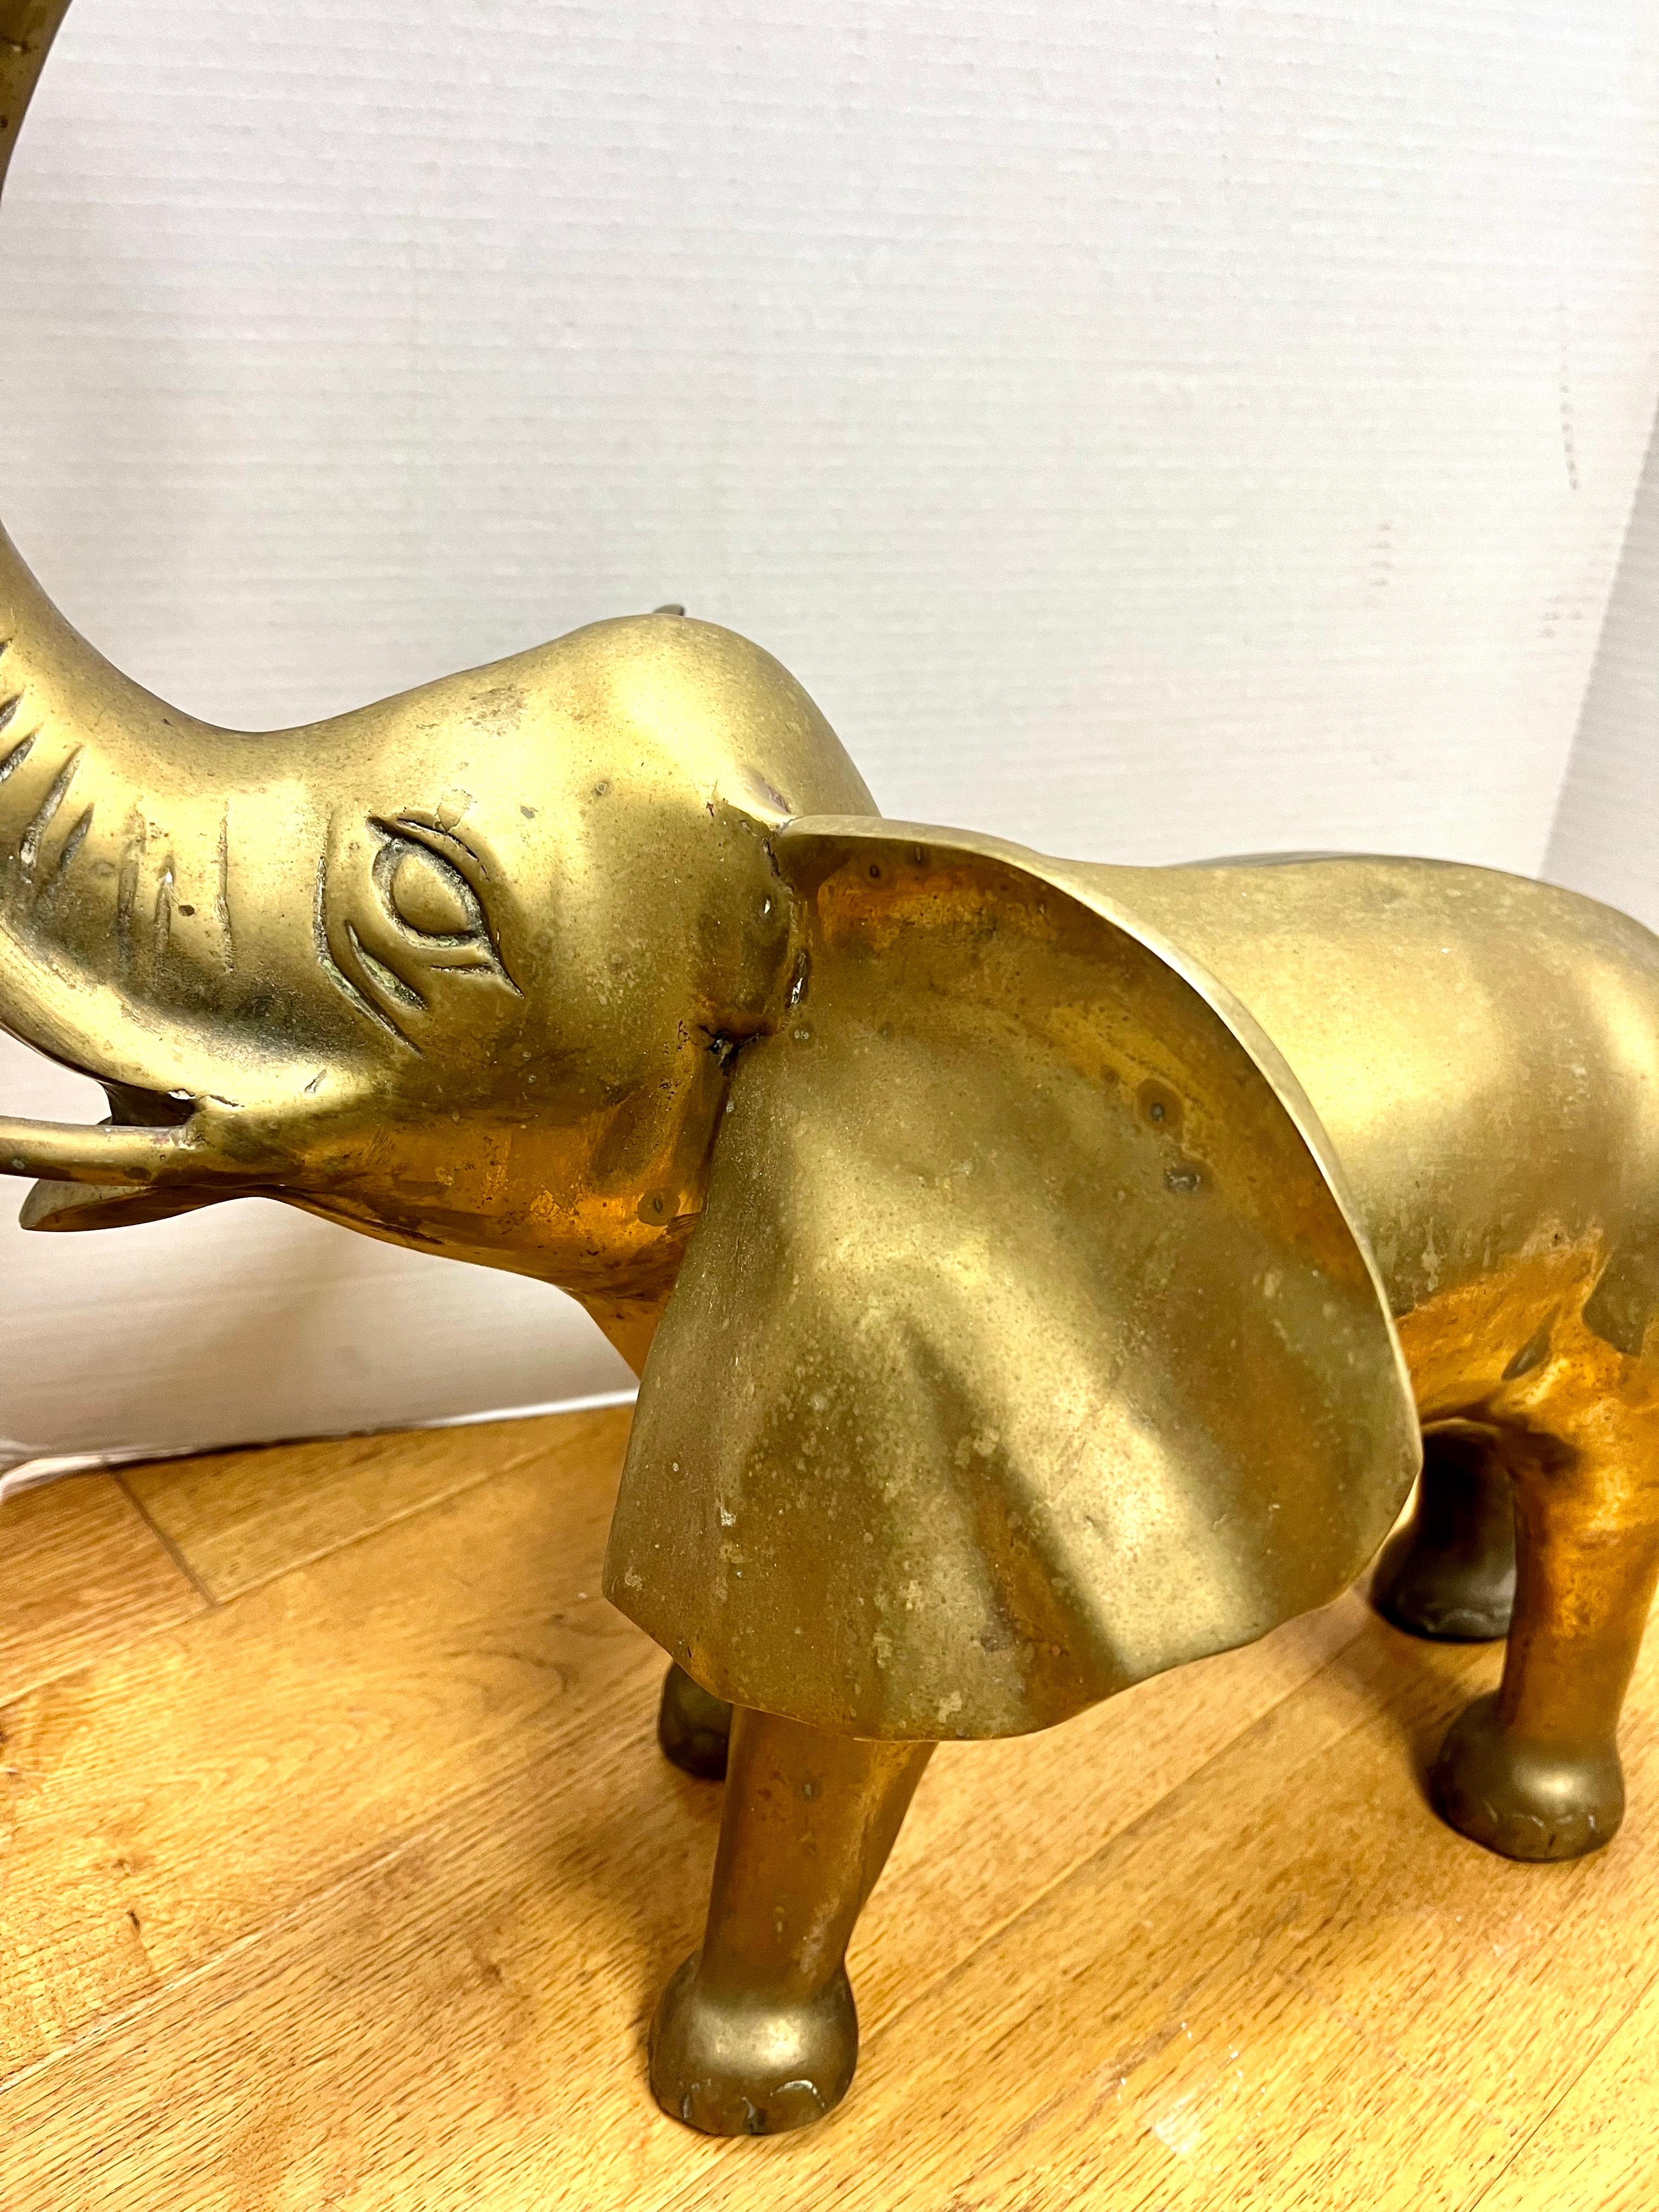 brass elephant figurine